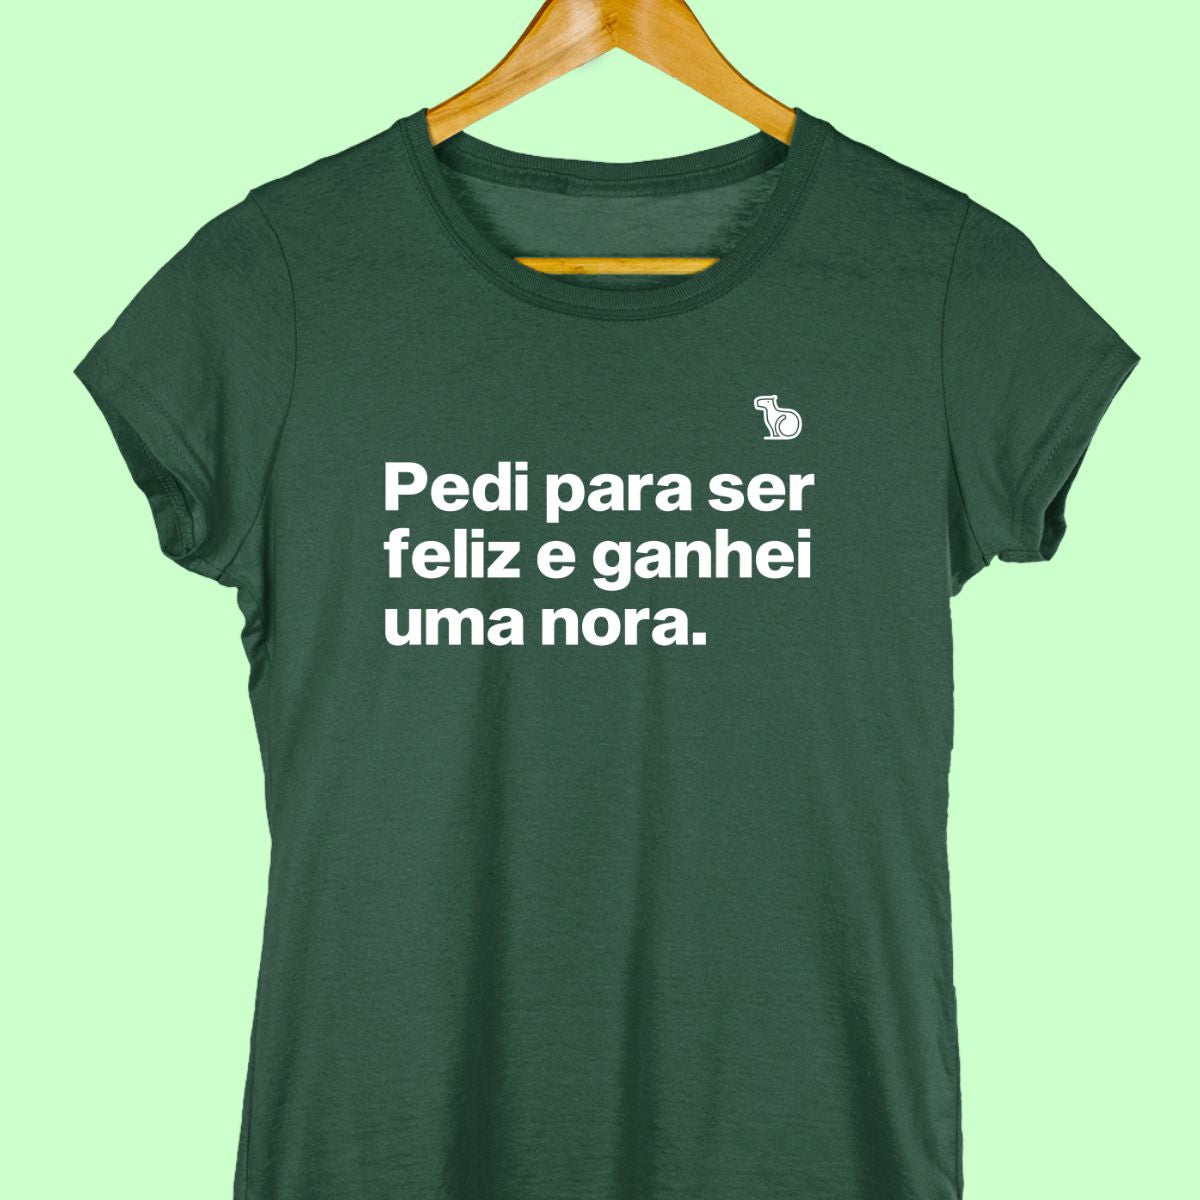 Camiseta com a frase "Pedi para ser feliz e ganhei uma nora." feminina verde.